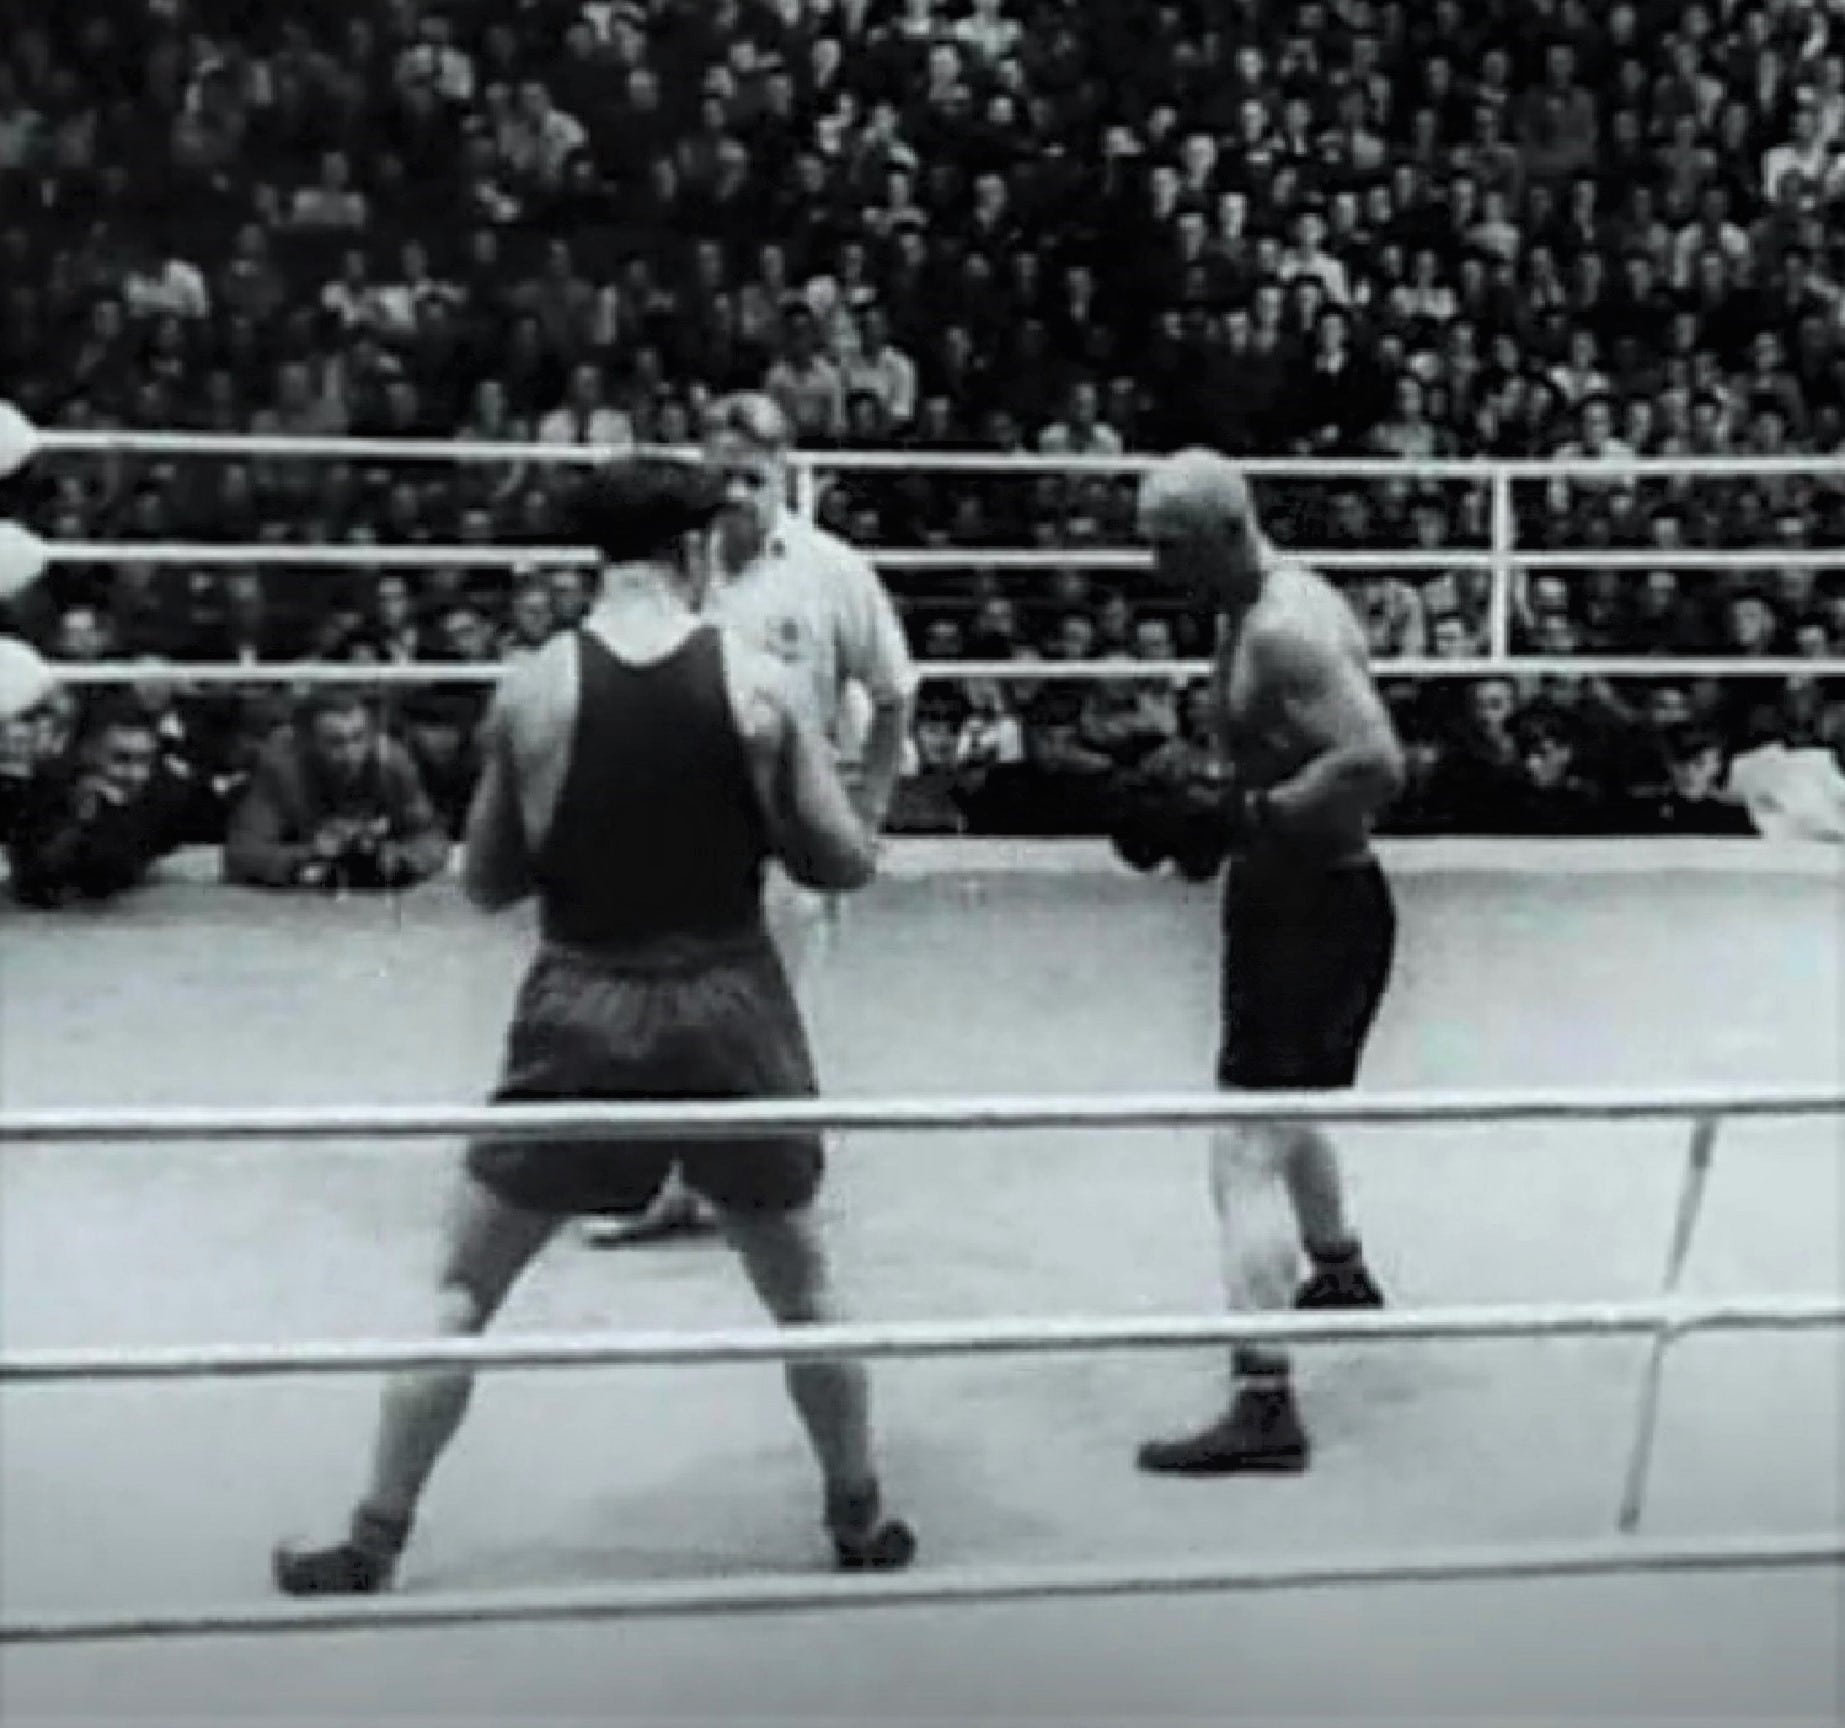 XV SSRS bokso čempionato finalinė kova. 1949 m. liepos 14 d. Dokumentinio filmo „Gyvenimas ringe“ (1962, rež. Vytautas Dabašinskas) kadras